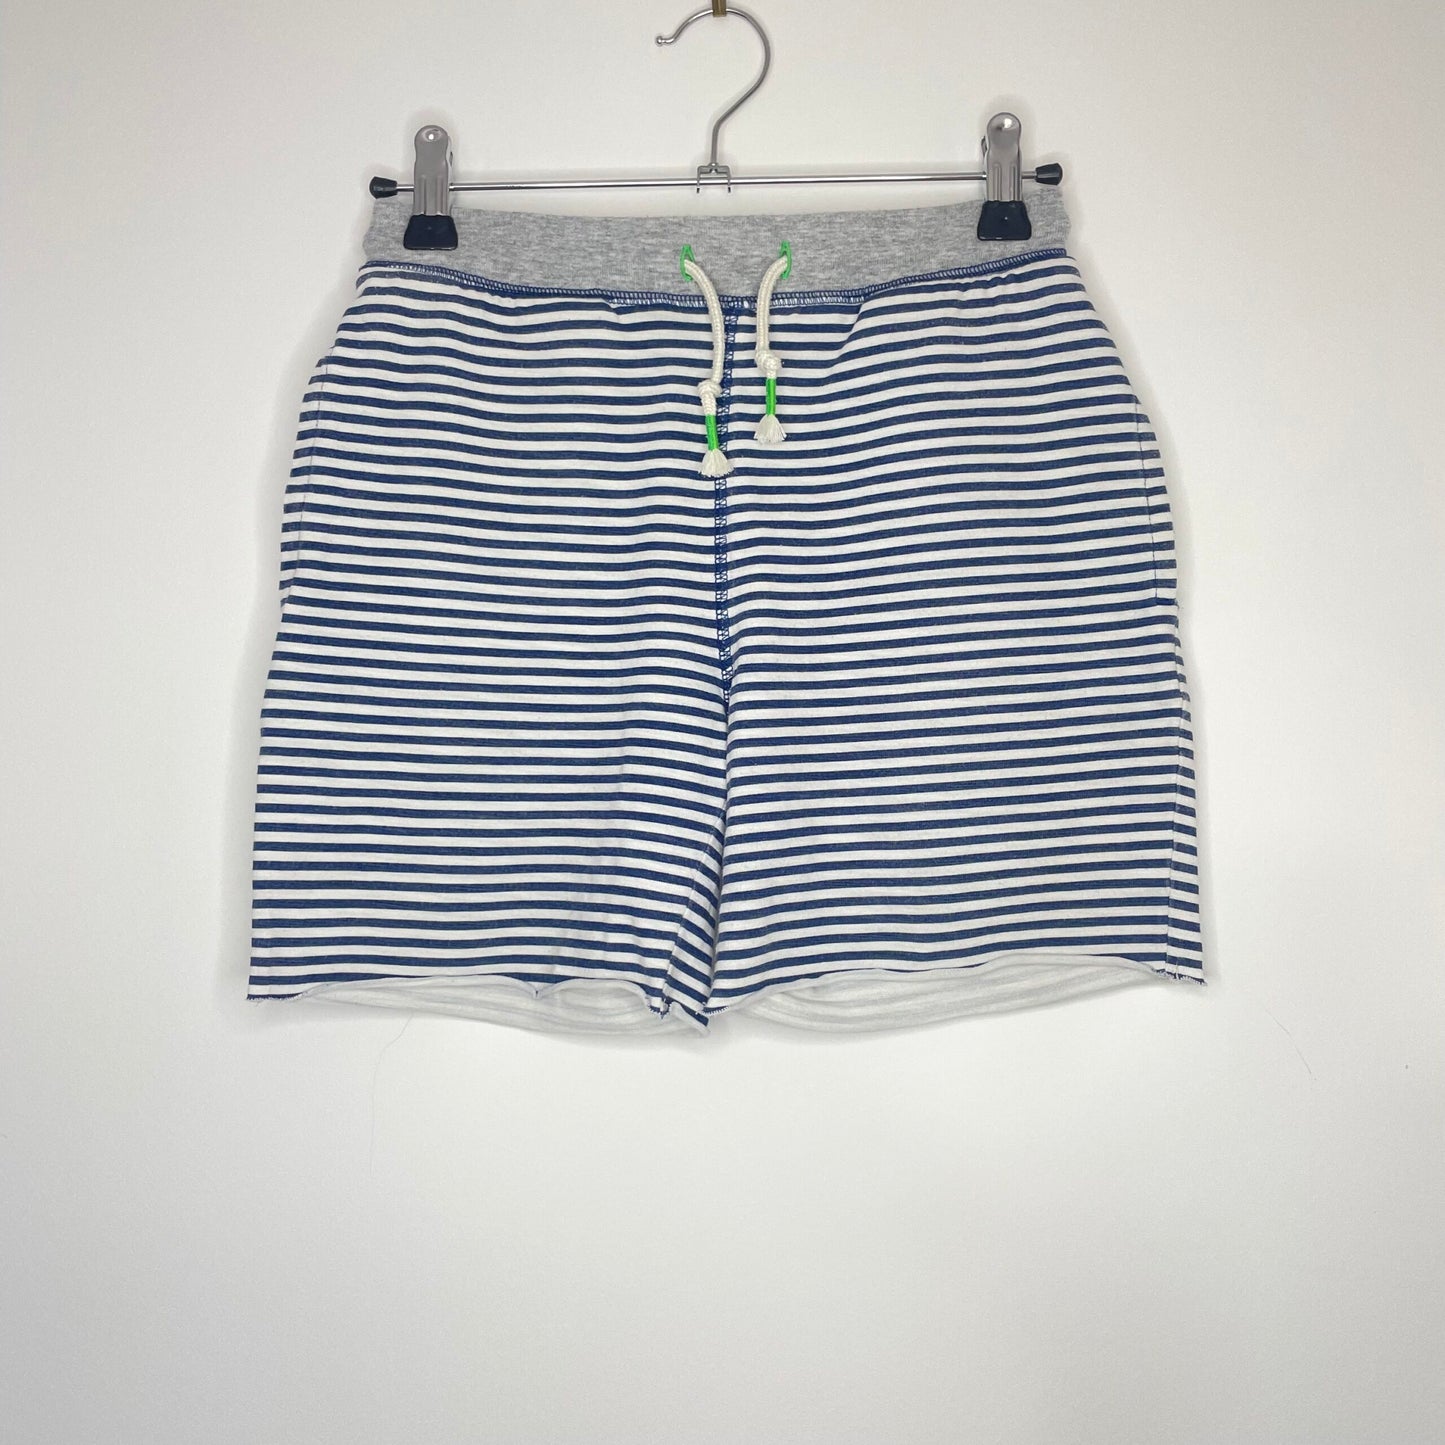 Boden Navy & White Stripe Shorts 9 years